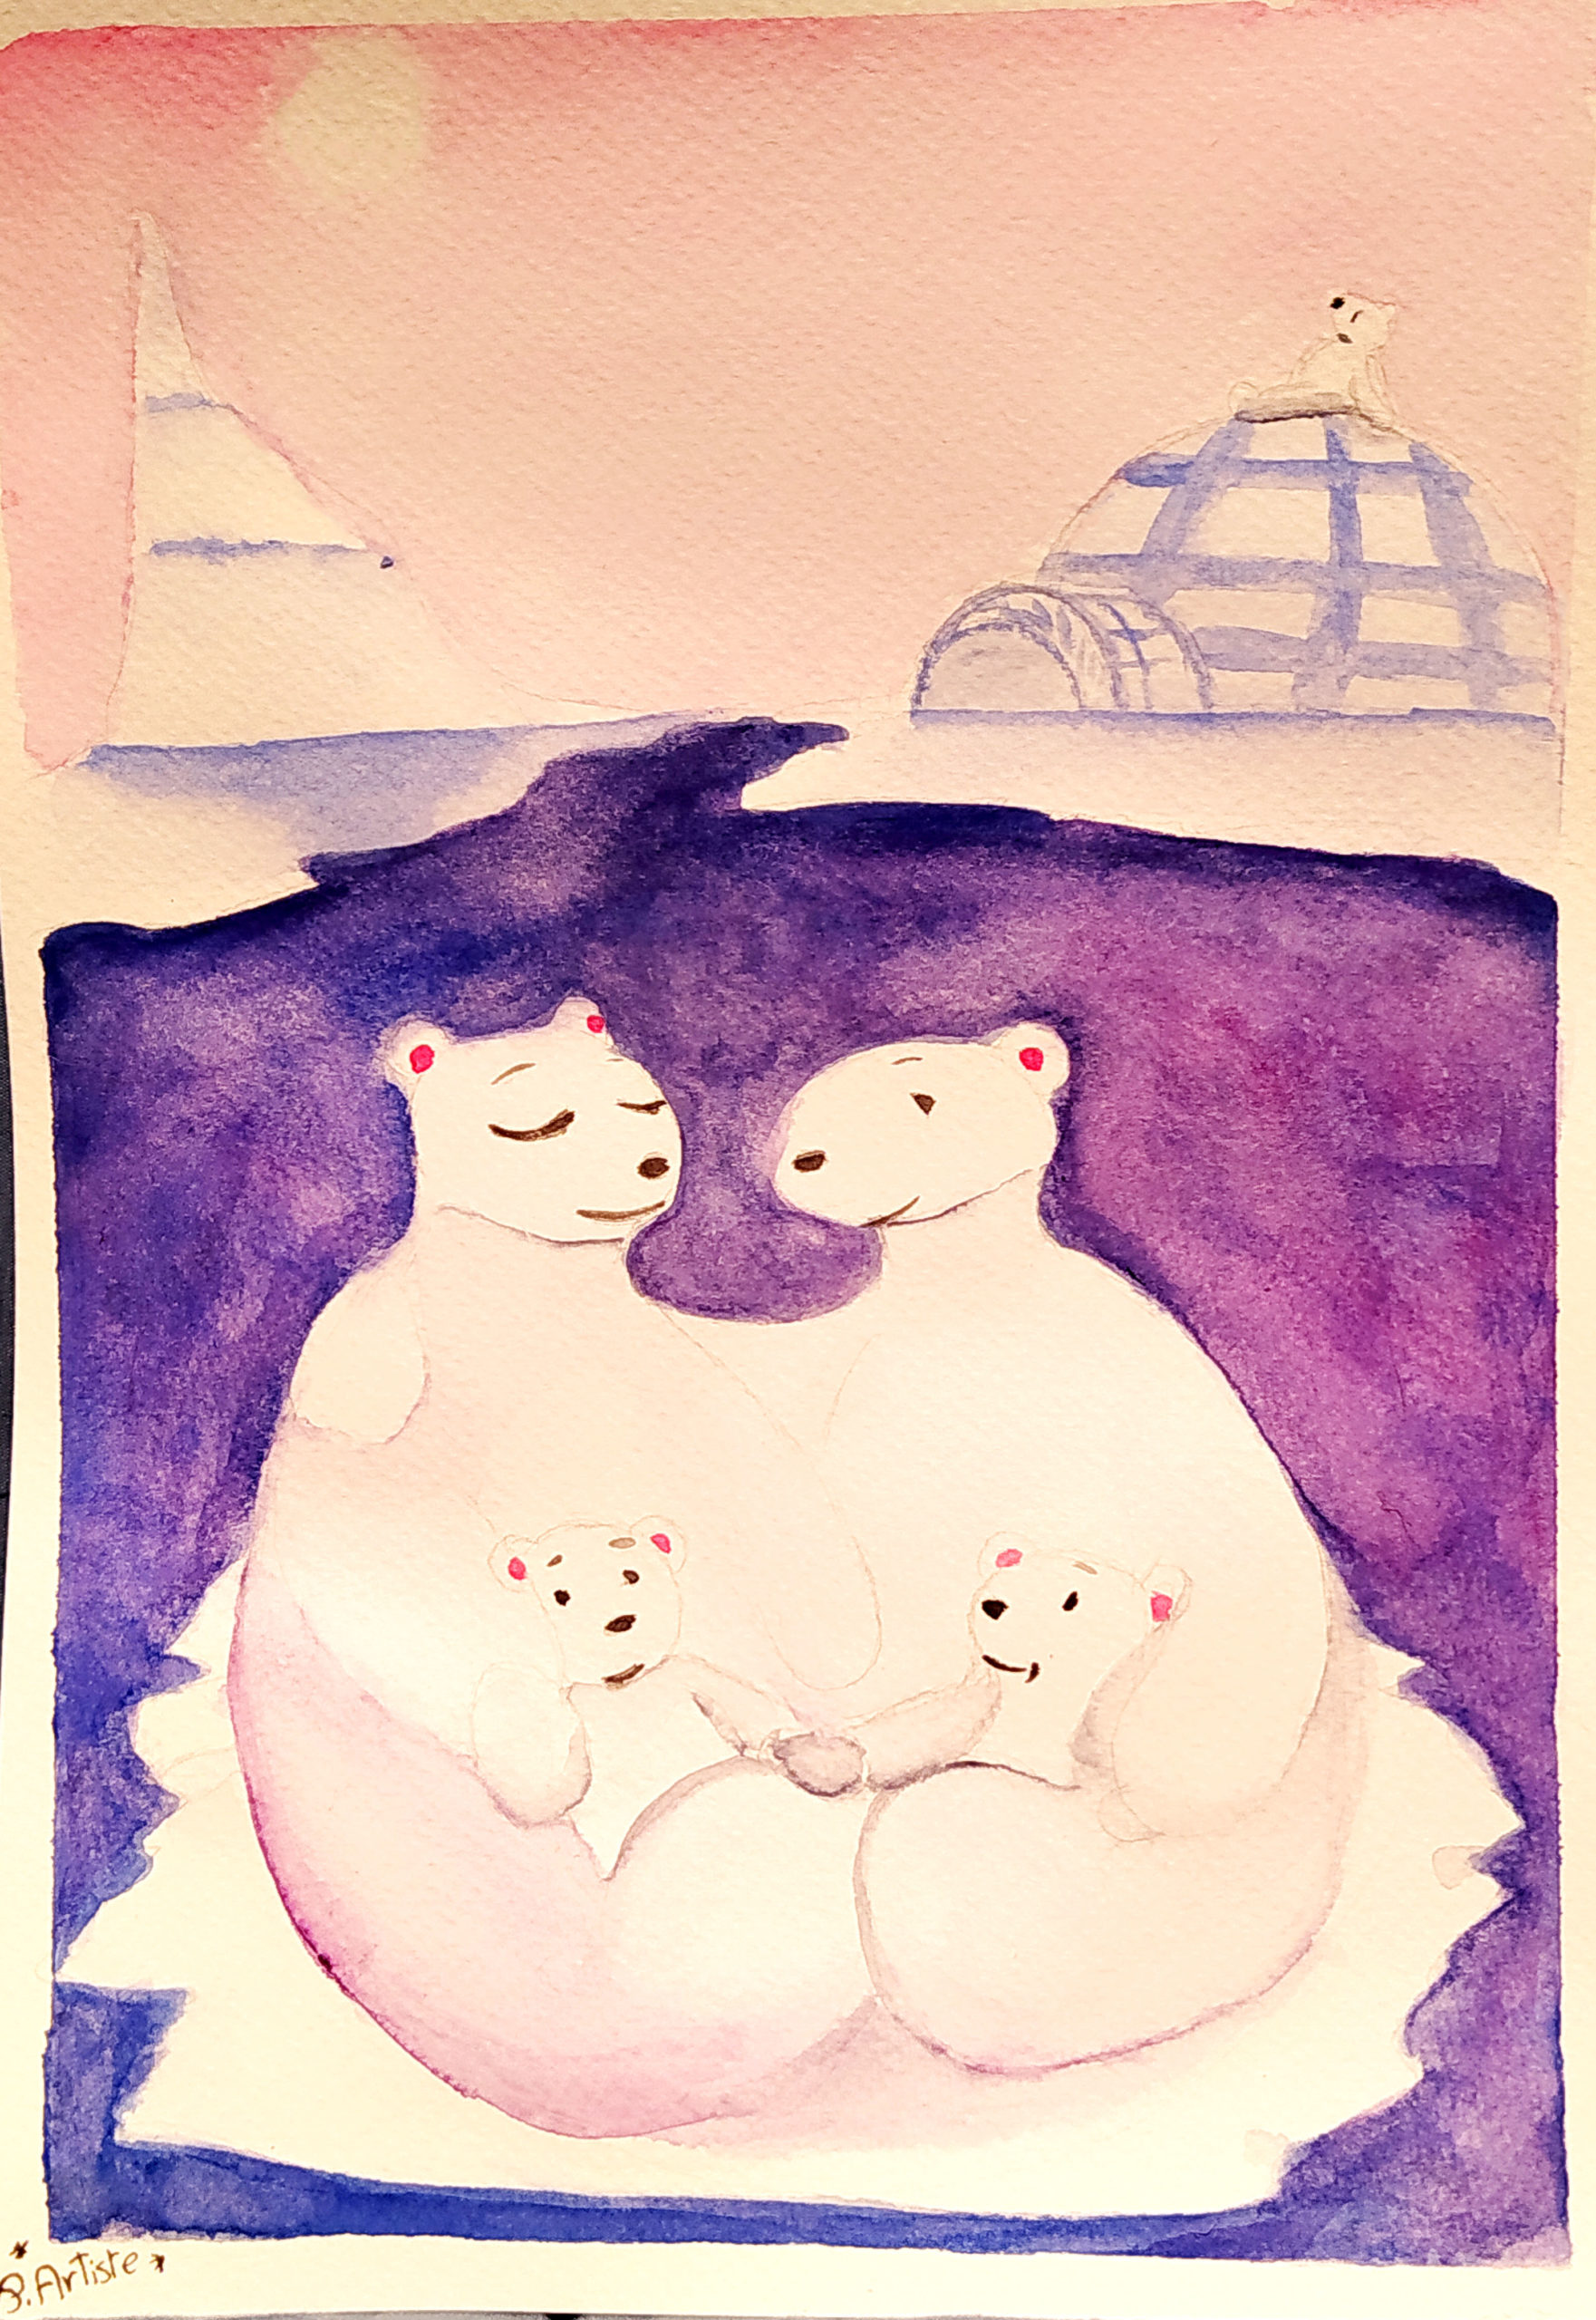 Pour changer de la tristesse de voir des ours blancs isolés sur un bout de glace, voici une famille réunie et proche du bord.